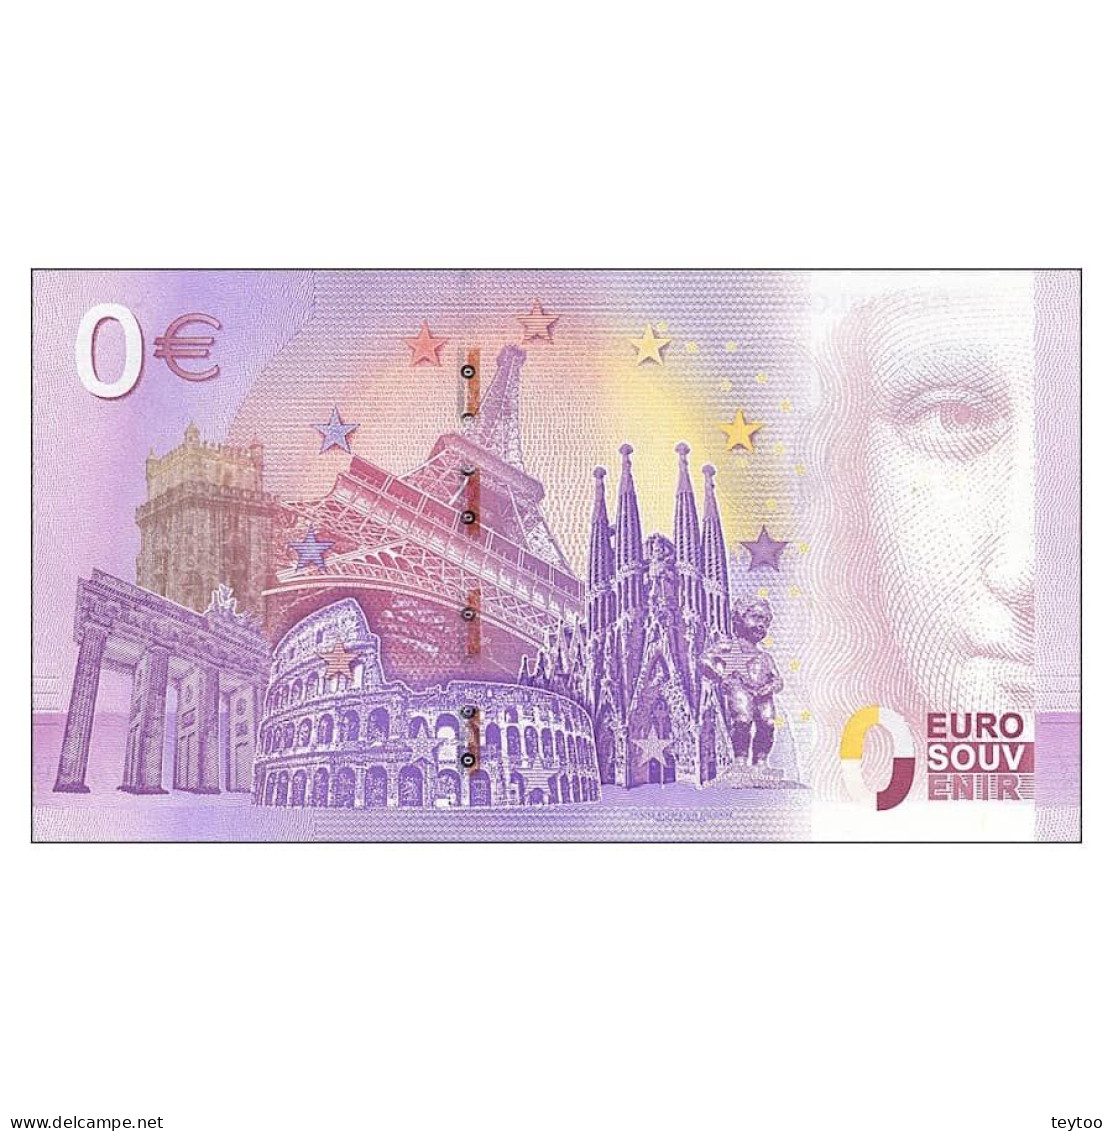 C2641# 0 Euros. España. Astorga. Palacio Gaudí (SC) 2018-1A - [ 8] Falsi & Saggi